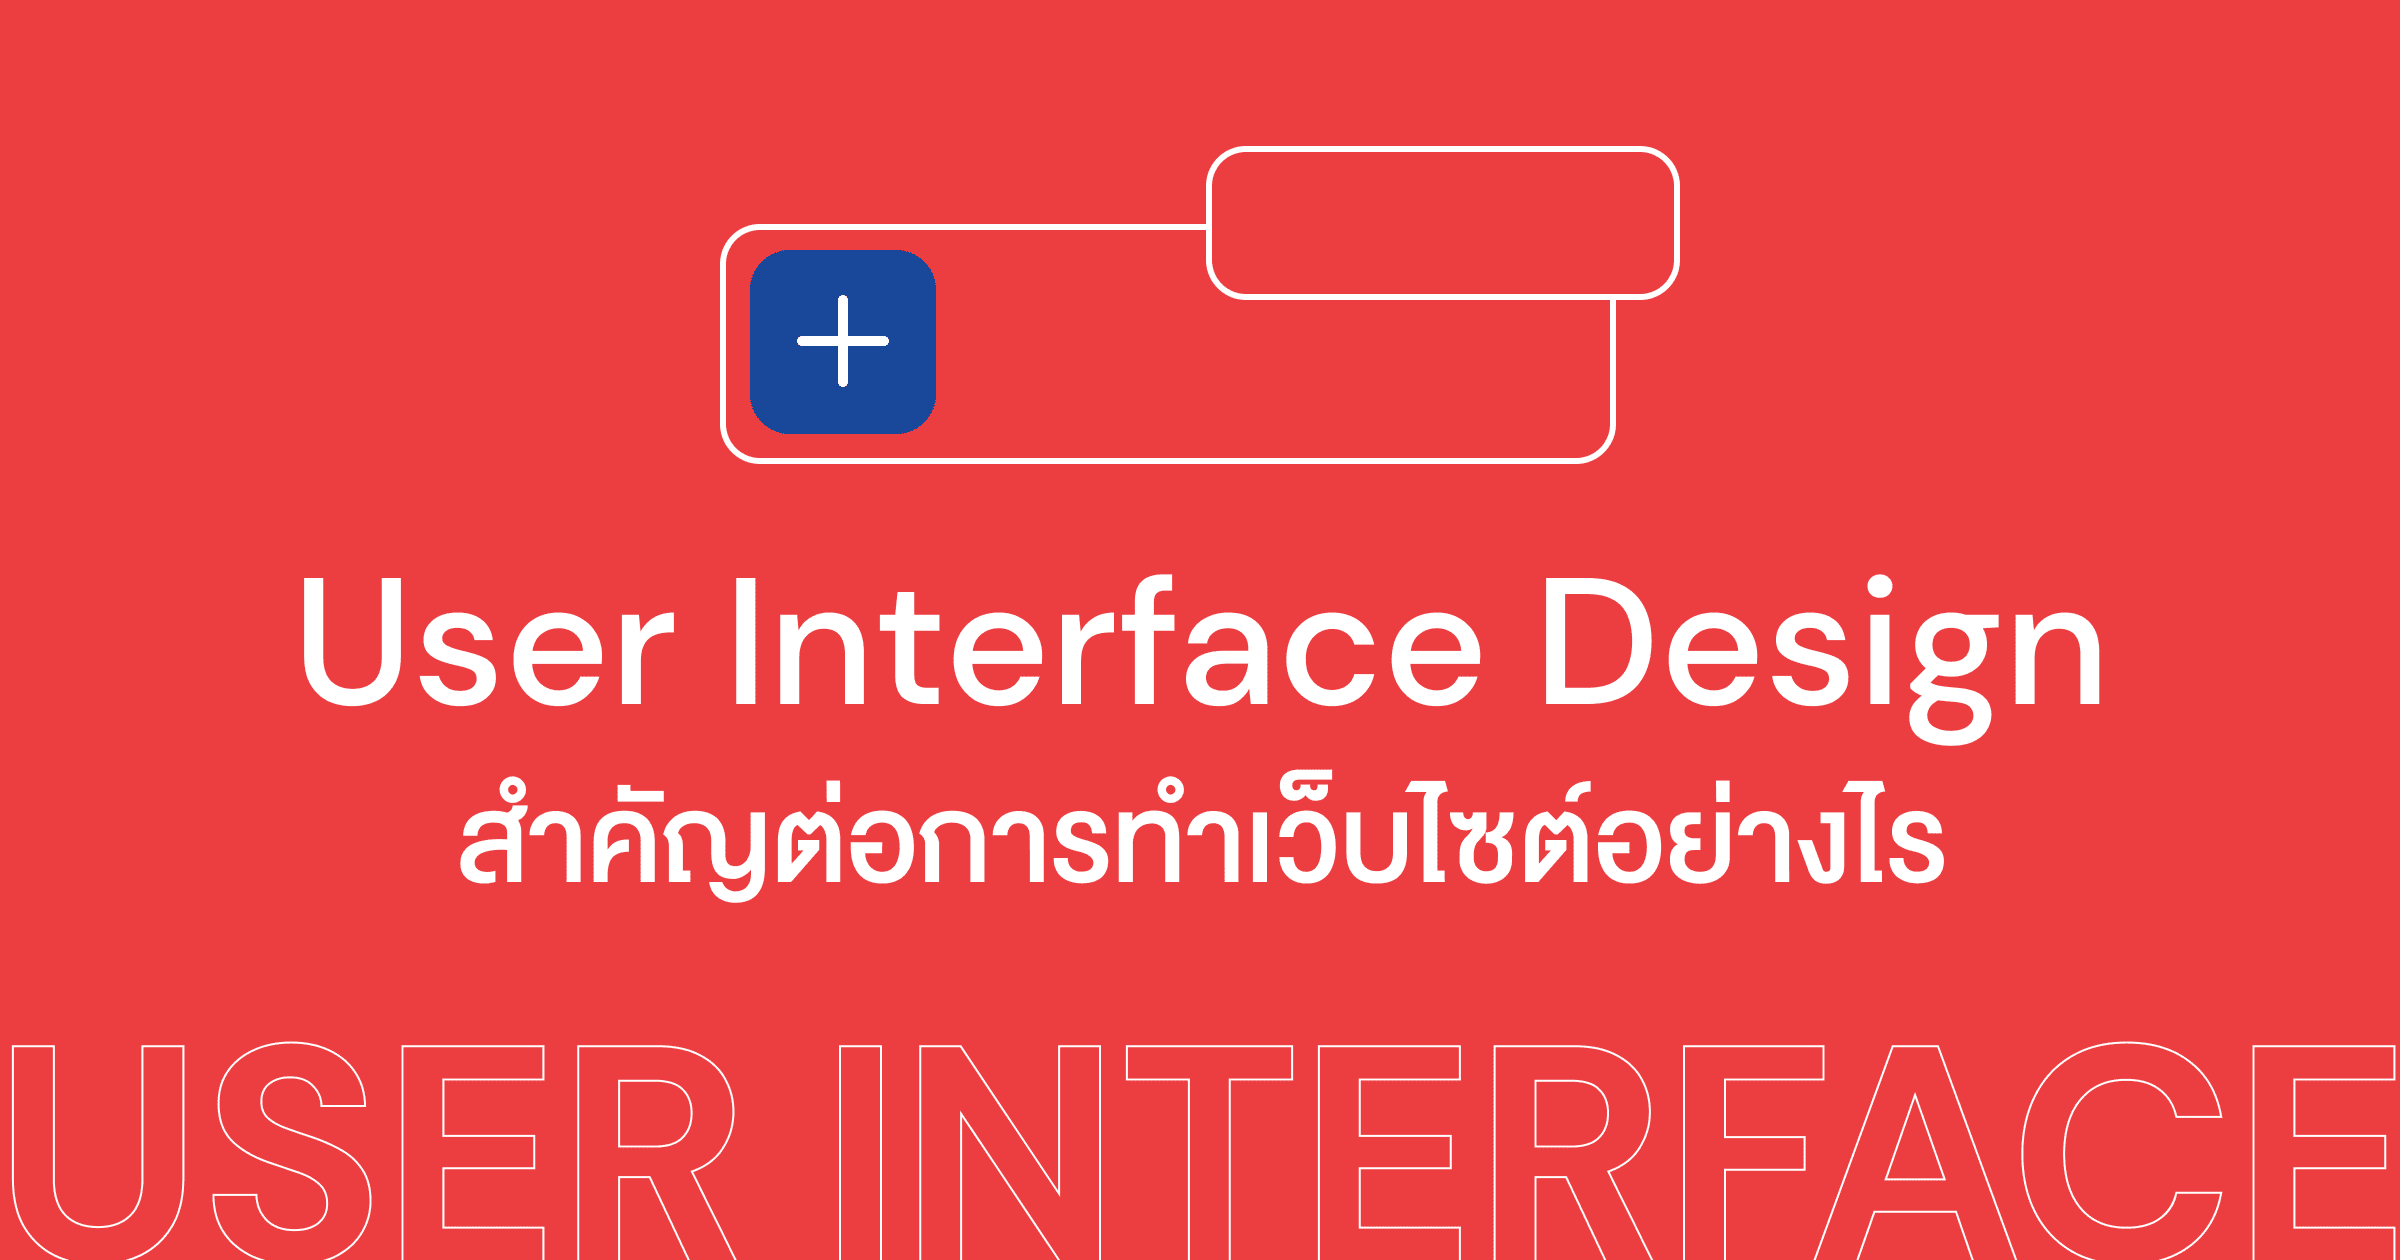 User Interface Design คืออะไรและสำคัญต่อการทำเว็บไซต์อย่างไร